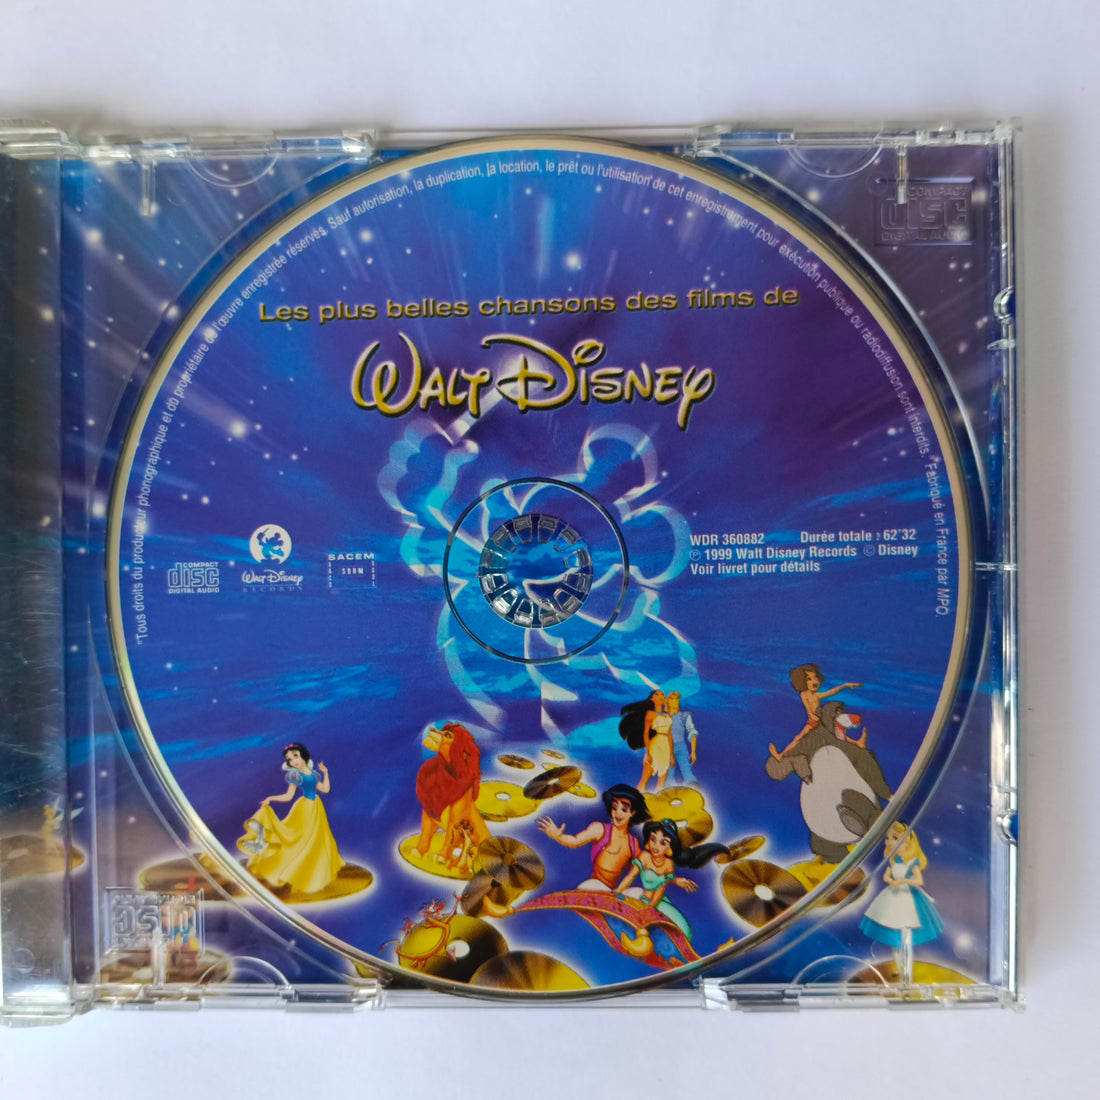 Les plus grandes chansons des films ( en francais) de Walt Disney, CD chez  Musicland - Ref:119154584